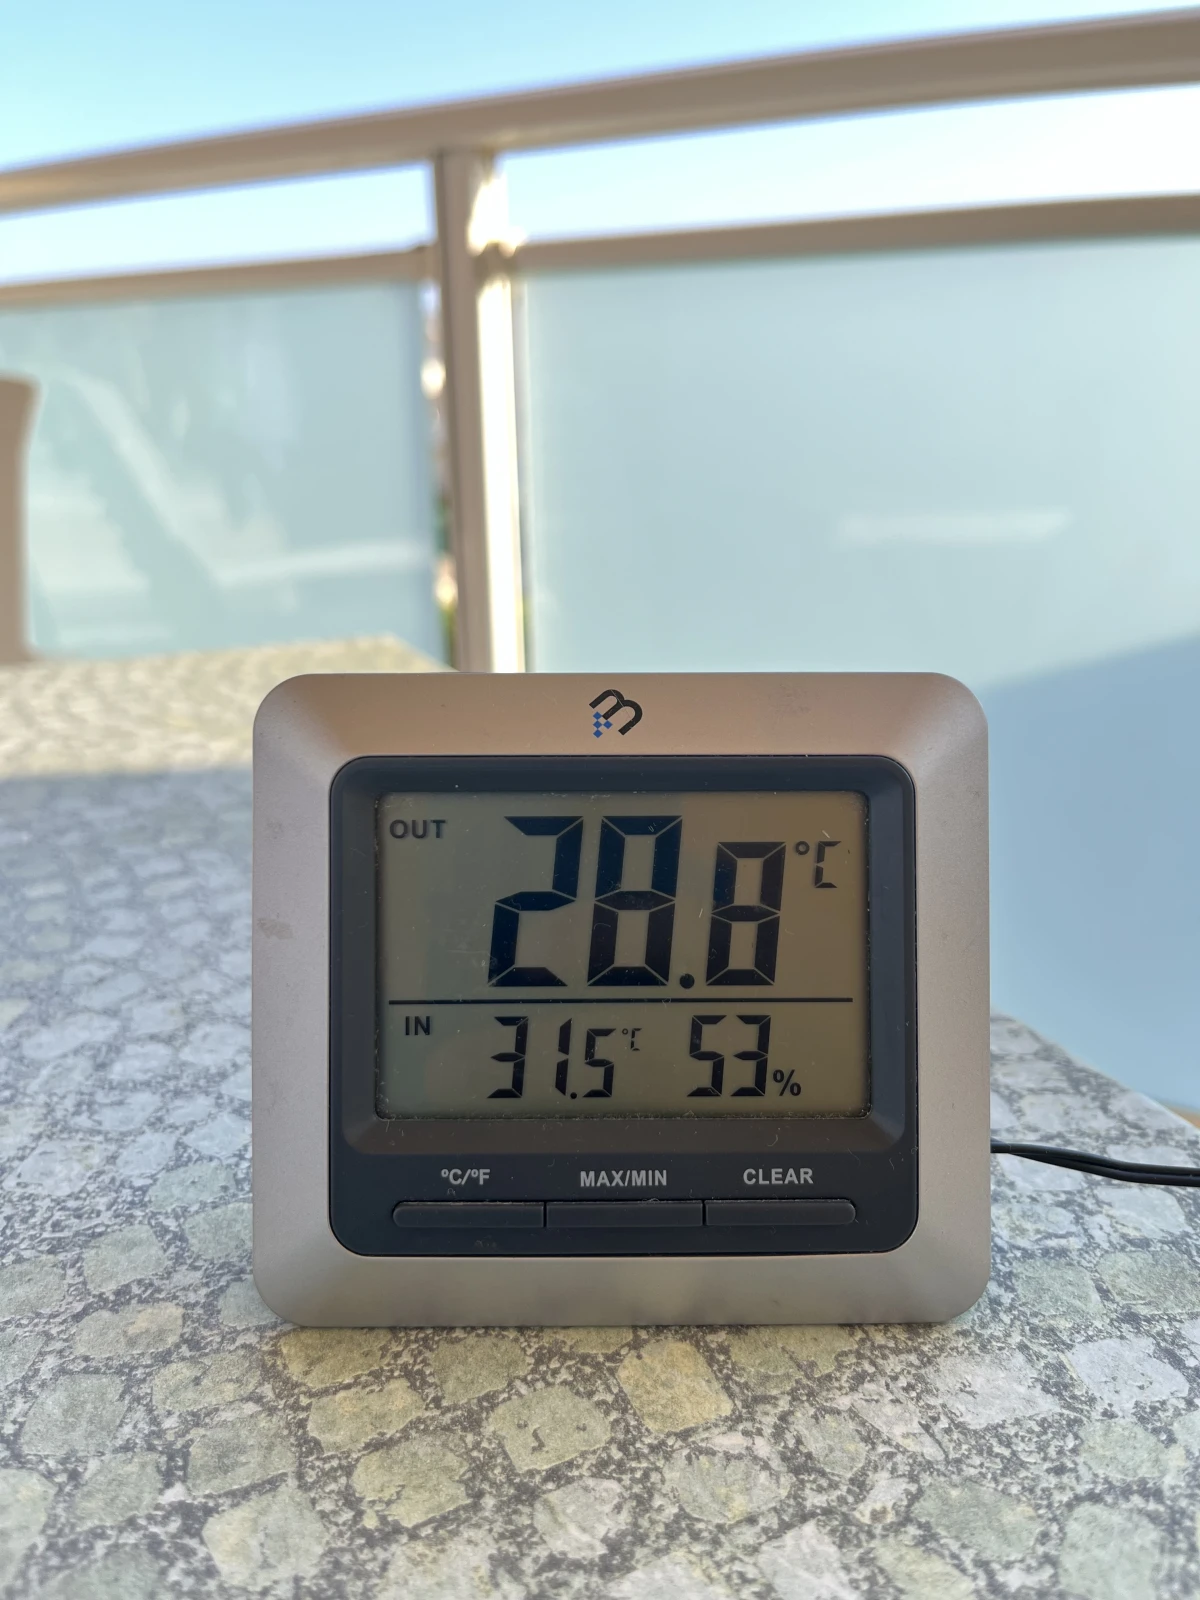 Sisä- ja ulkolämpötilaa näyttävä mittari pöydällä, taustalla kaide. Lämpötila 28.8 astetta.